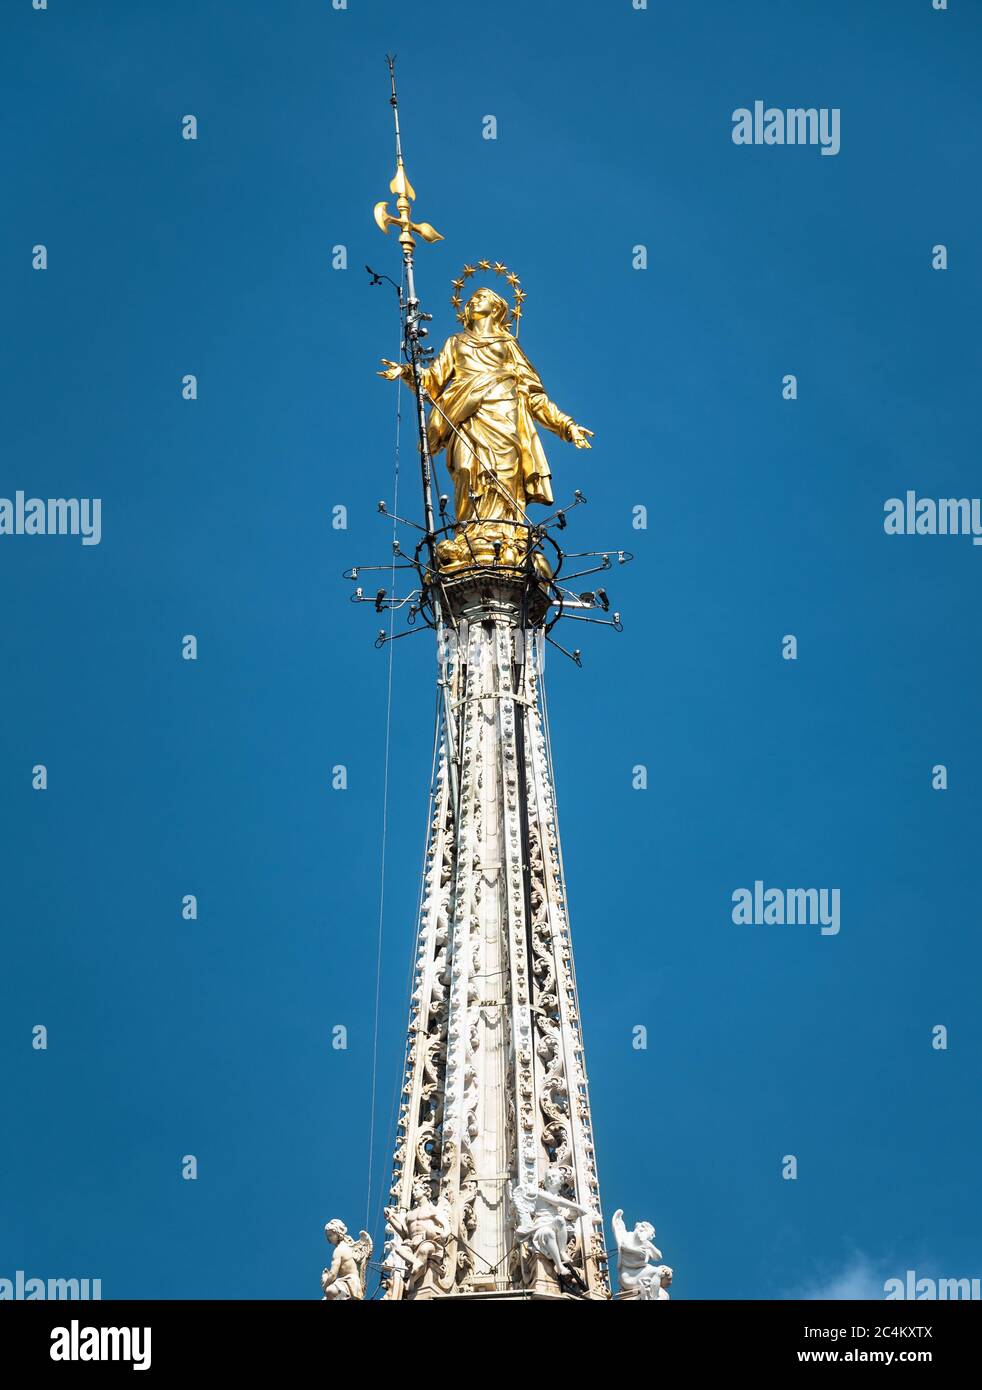 Madonnina auf dem Mailänder Dom in der Höhe von 108.5 m in Mailand, Italien. Goldene Statue der Madonna Nahaufnahme auf dem blauen Himmel Hintergrund. Berühmte Milan Cat Stockfoto